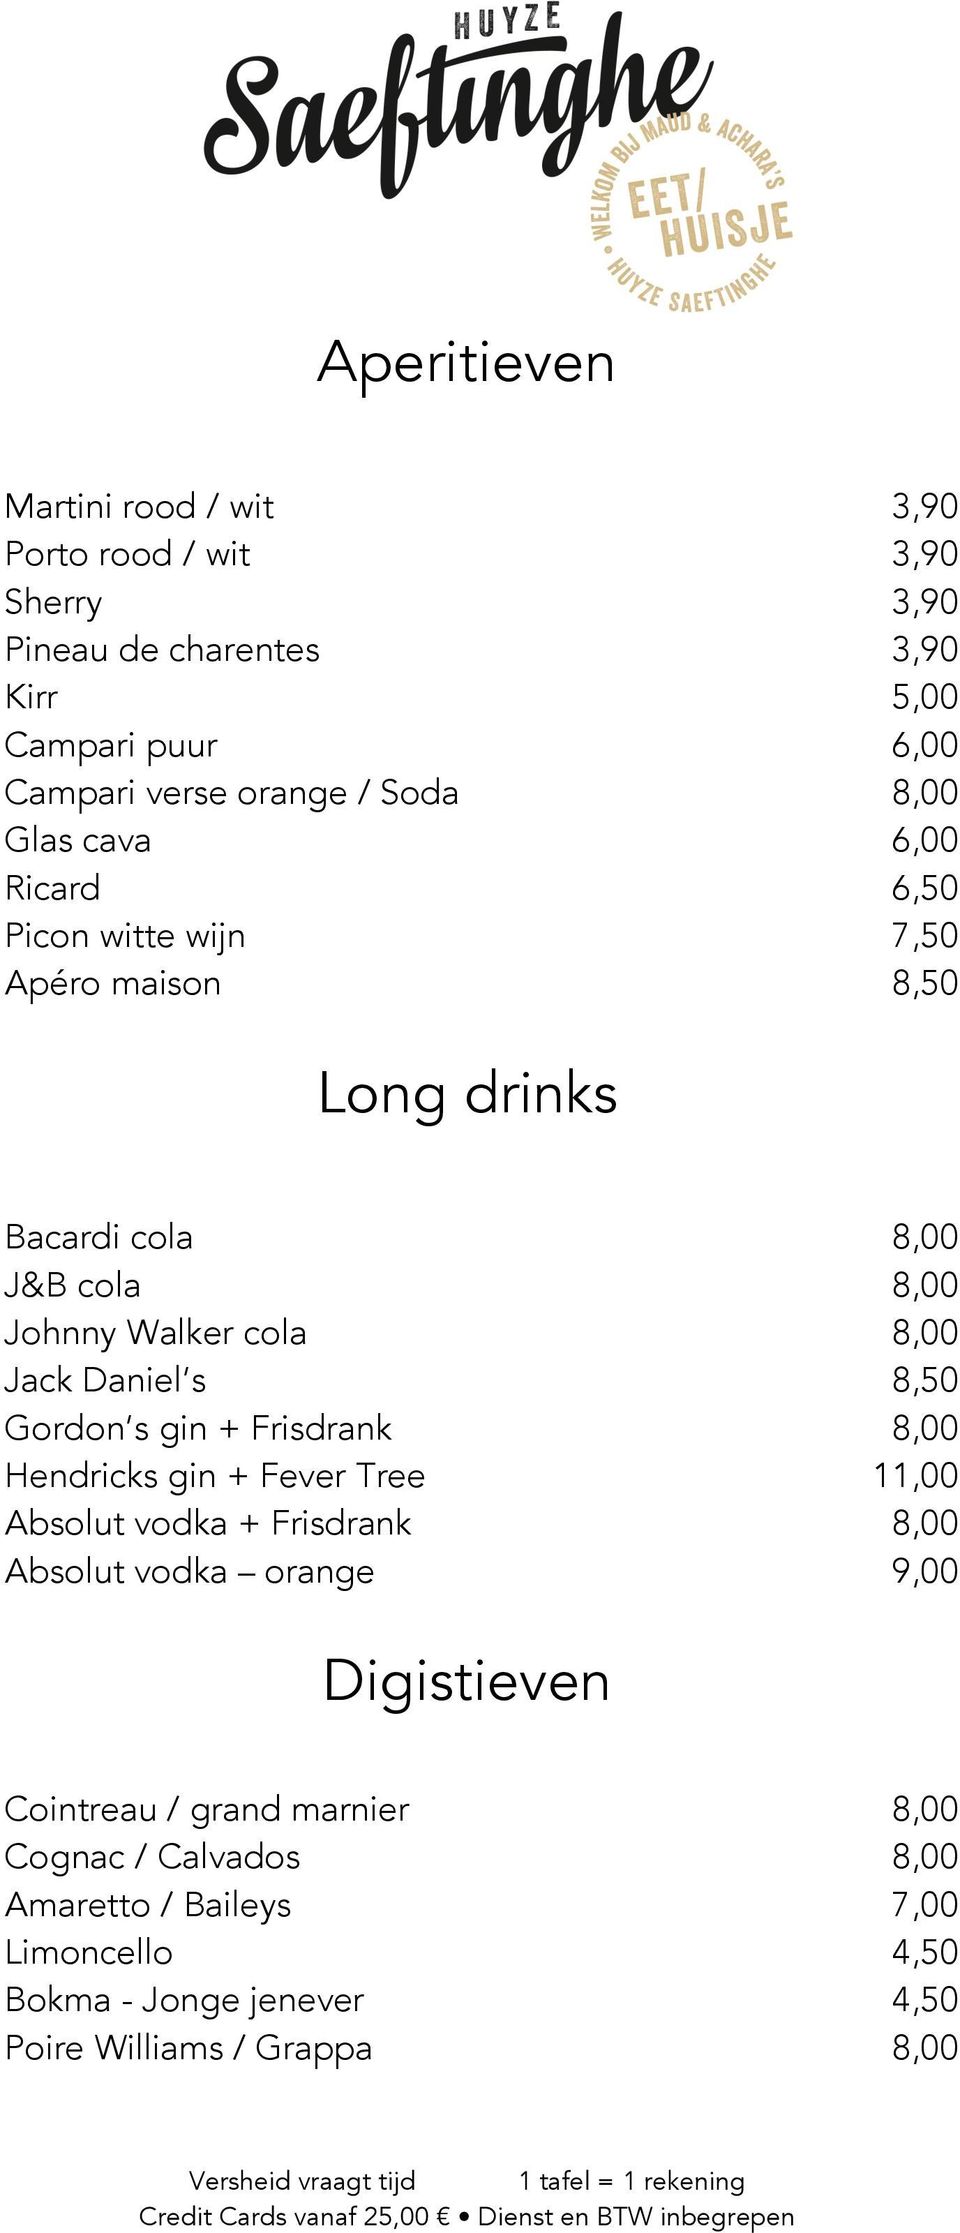 Jack Daniel s 8,50 Gordon s gin + Frisdrank 8,00 Hendricks gin + Fever Tree 11,00 Absolut vodka + Frisdrank 8,00 Absolut vodka orange 9,00